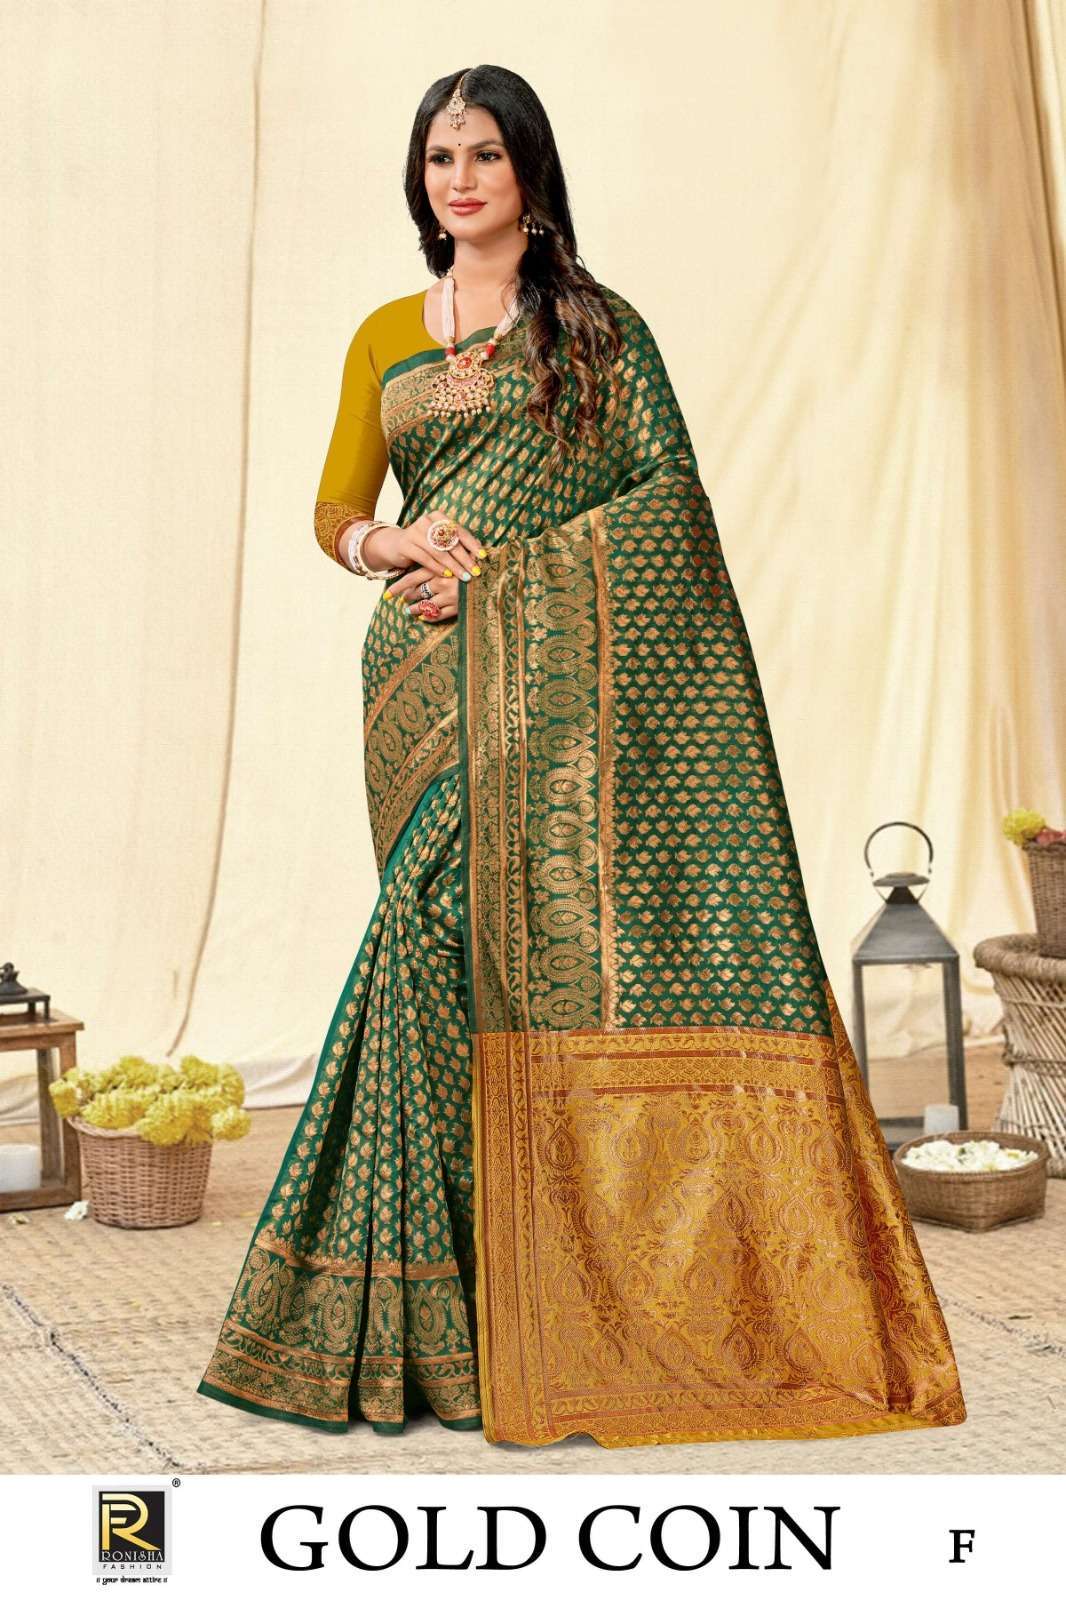 Ronisha Gold cion Banarasi Silk Saree manufacturers in Hyderabad